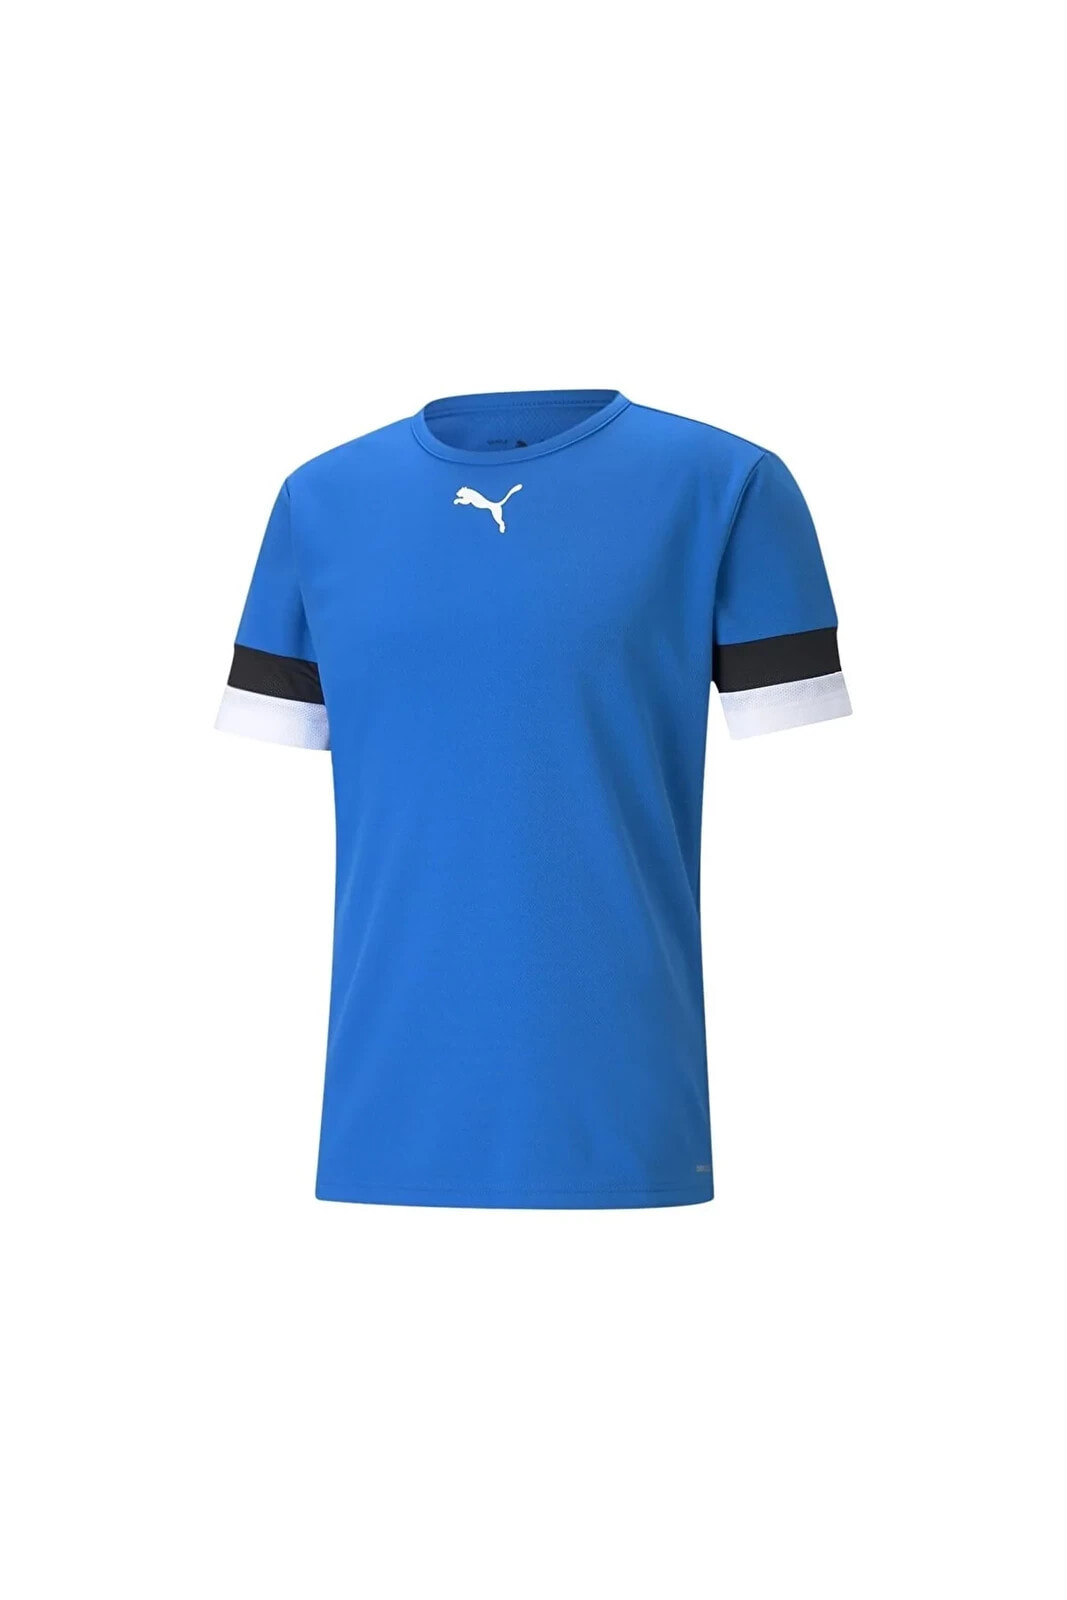 Teamrise Jersey Erkek Futbol Forması 70493202 Mavi